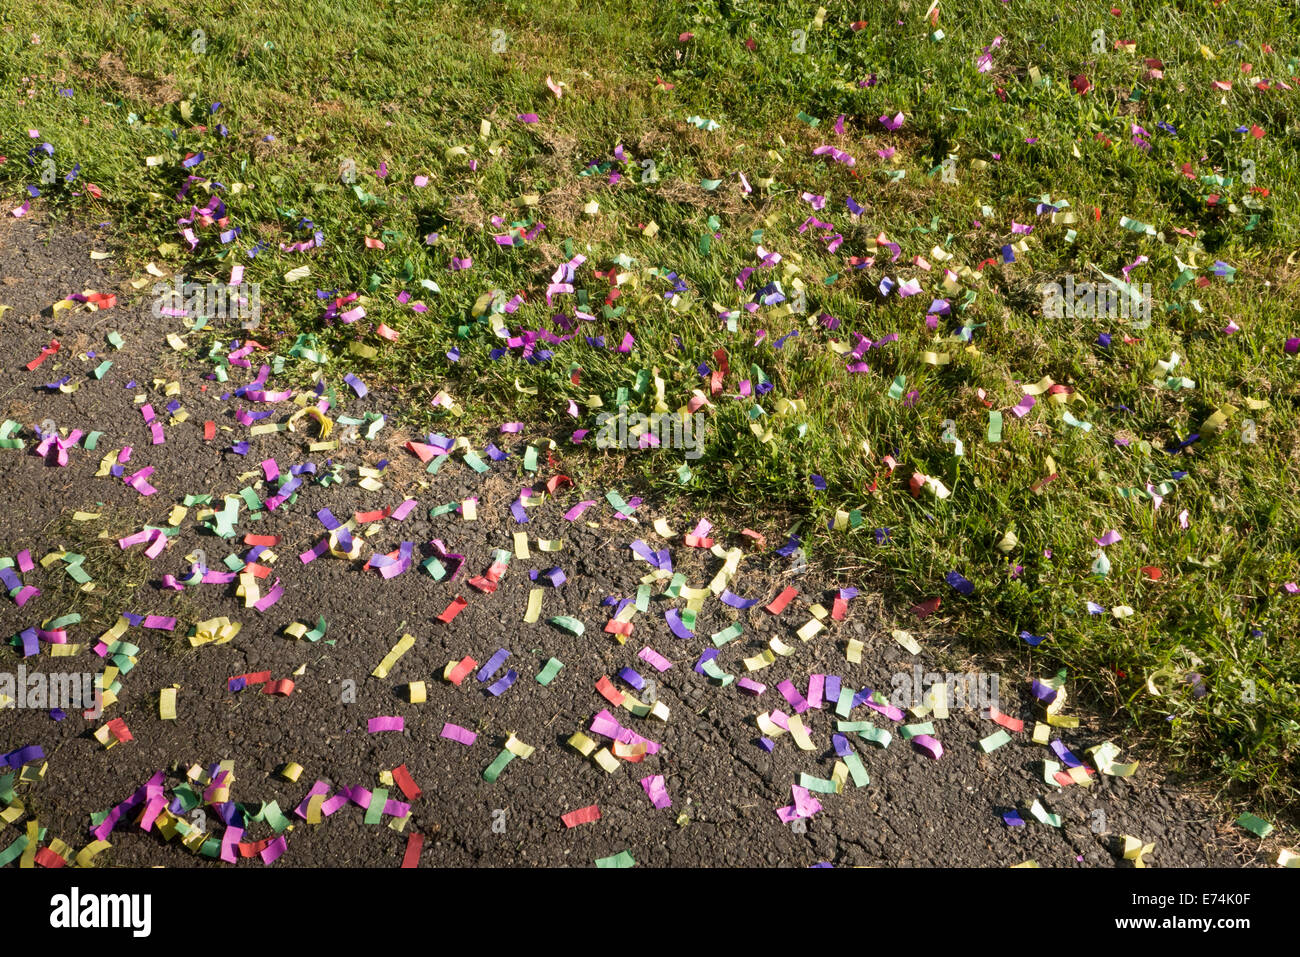 Colorful confetti on grass. Stock Photo